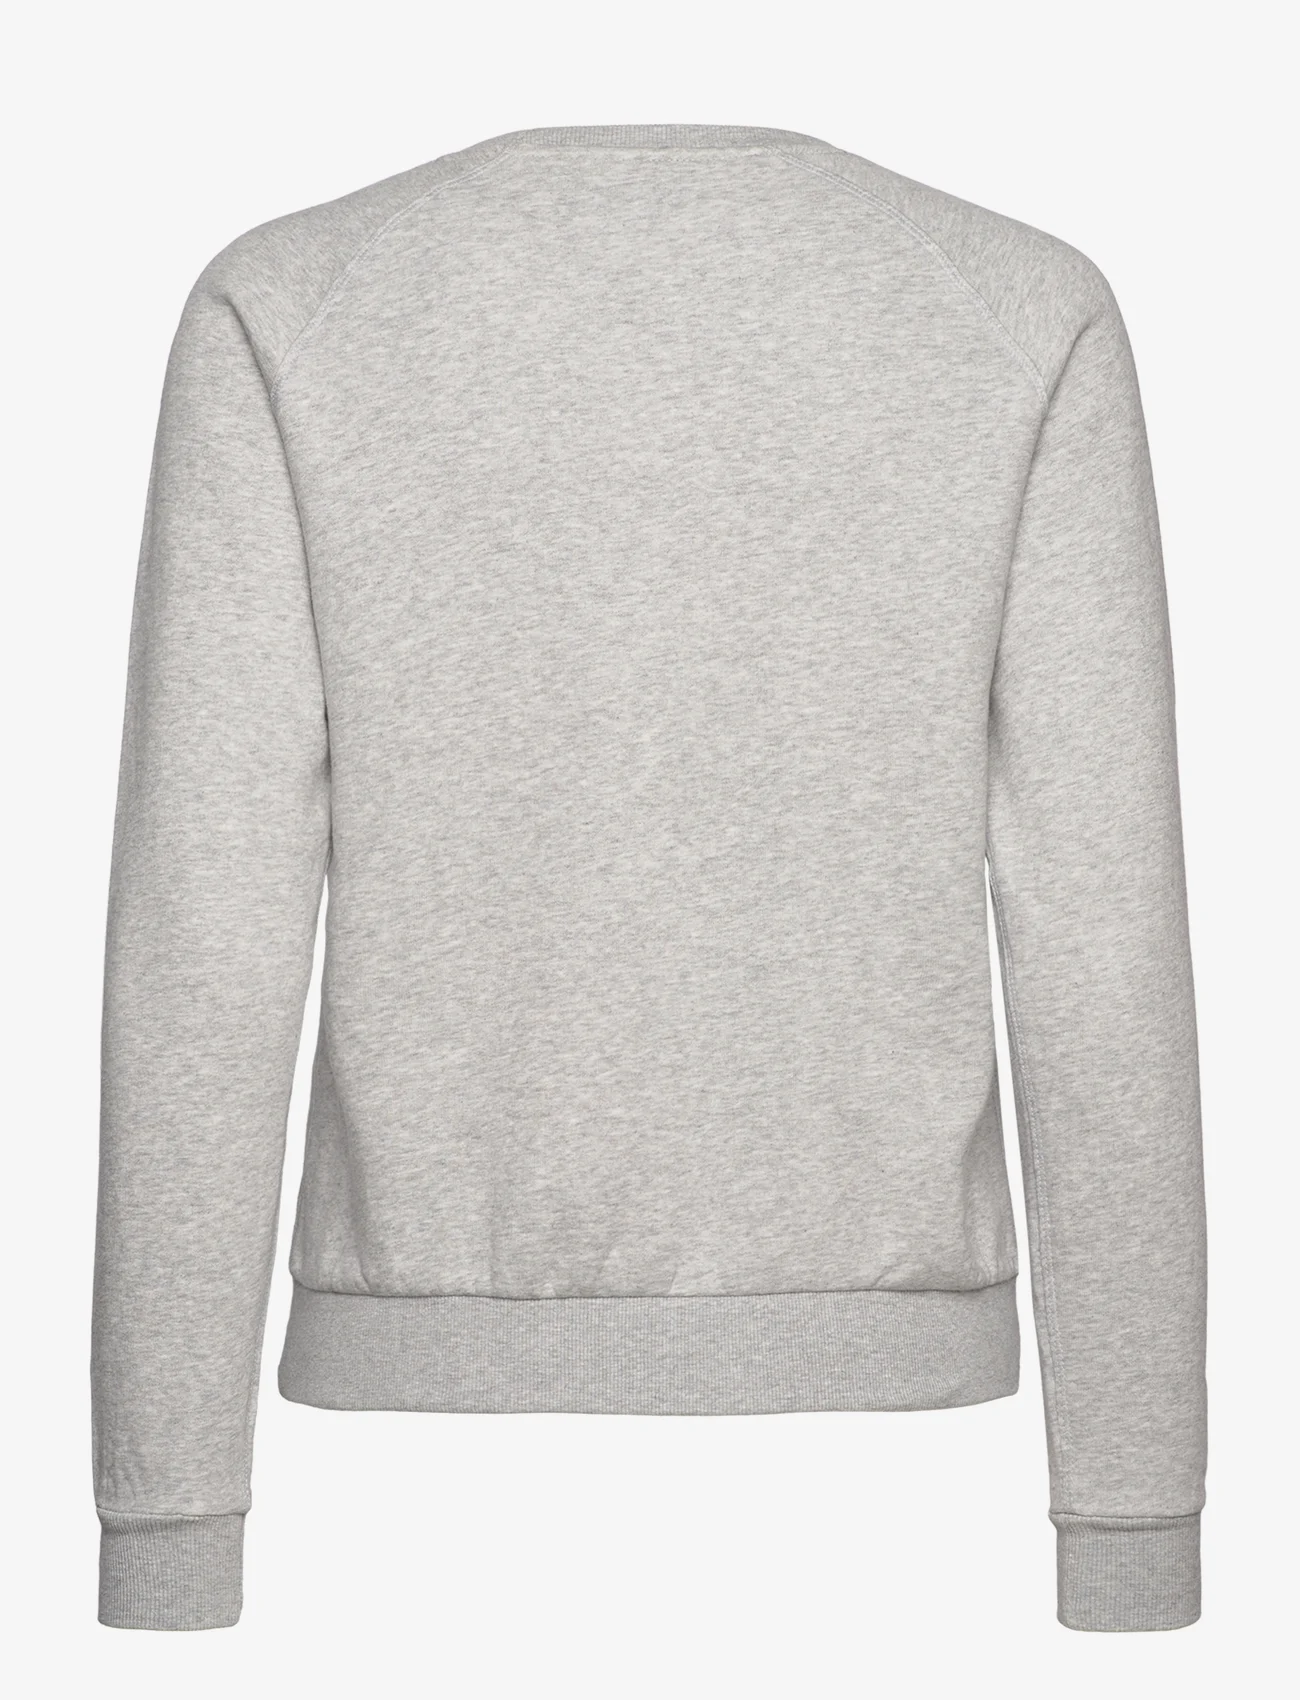 Peak Performance - W Ease Zip Hood - sweatshirts - med grey melange - 1